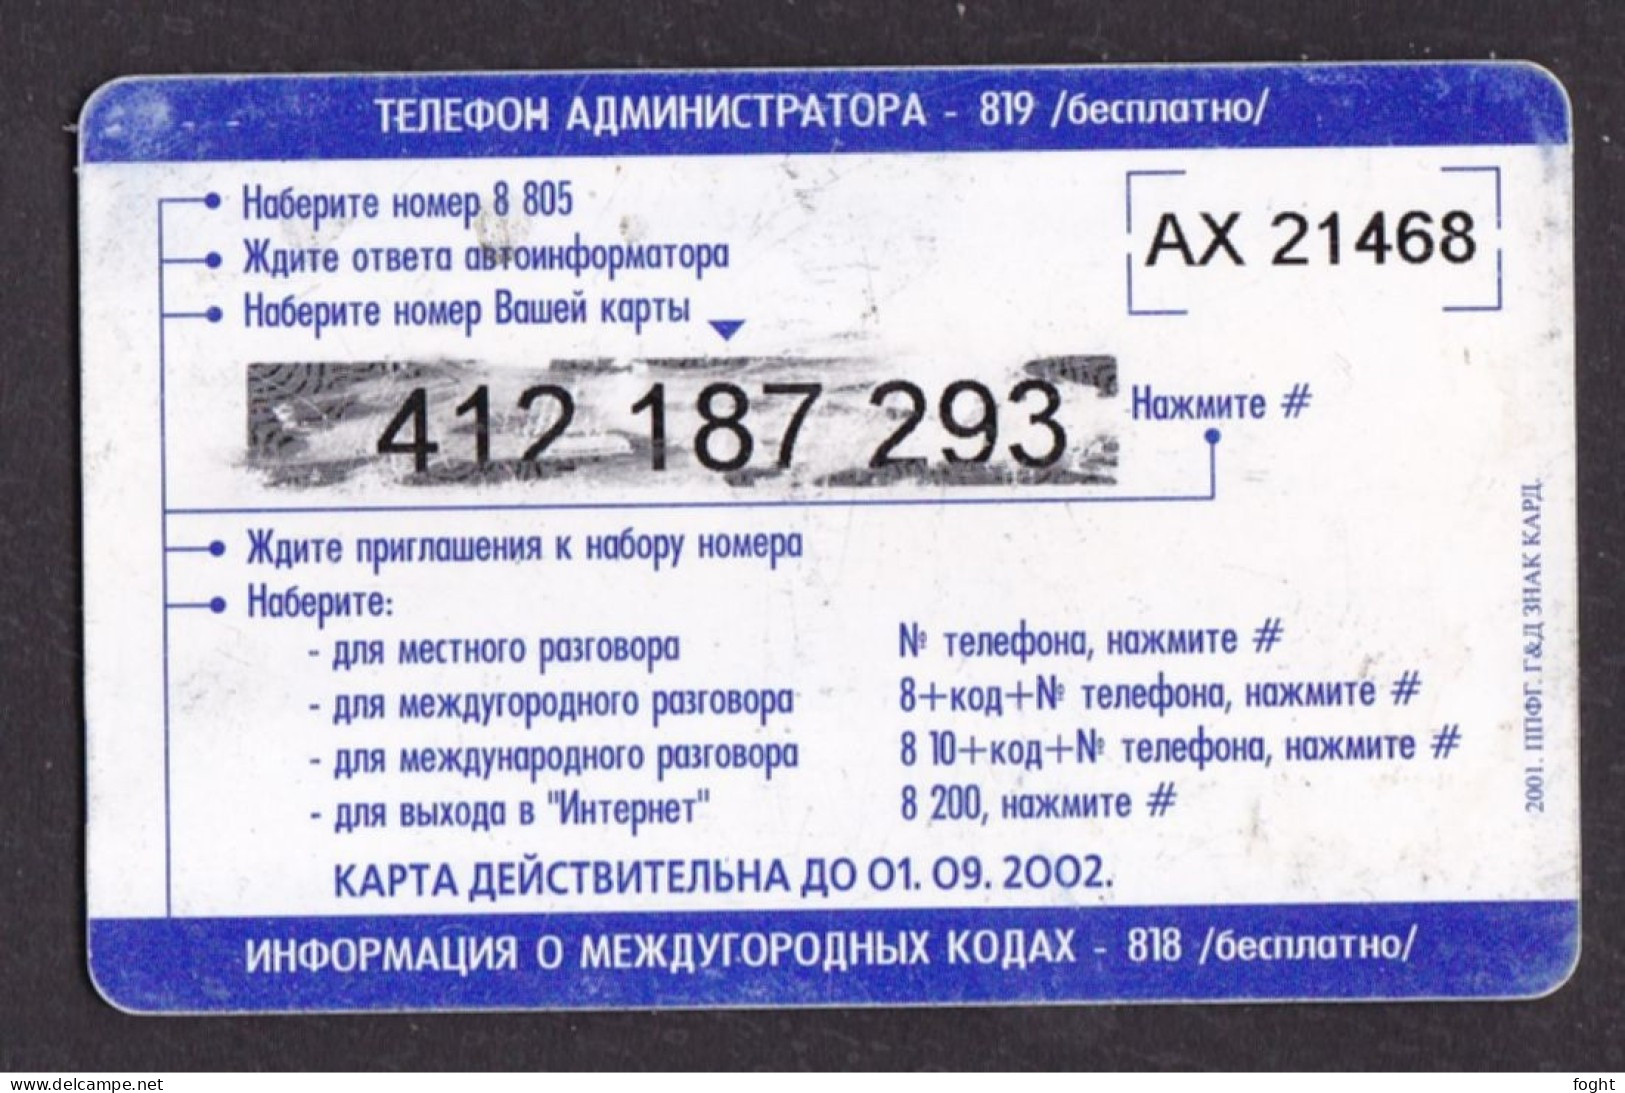 2001АХ Remote Memory Russia ,Udmurt Telecom-Izhevsk,"Grief",15 Units Card,Col:RU-PRE-UDM-0054 - Rusia